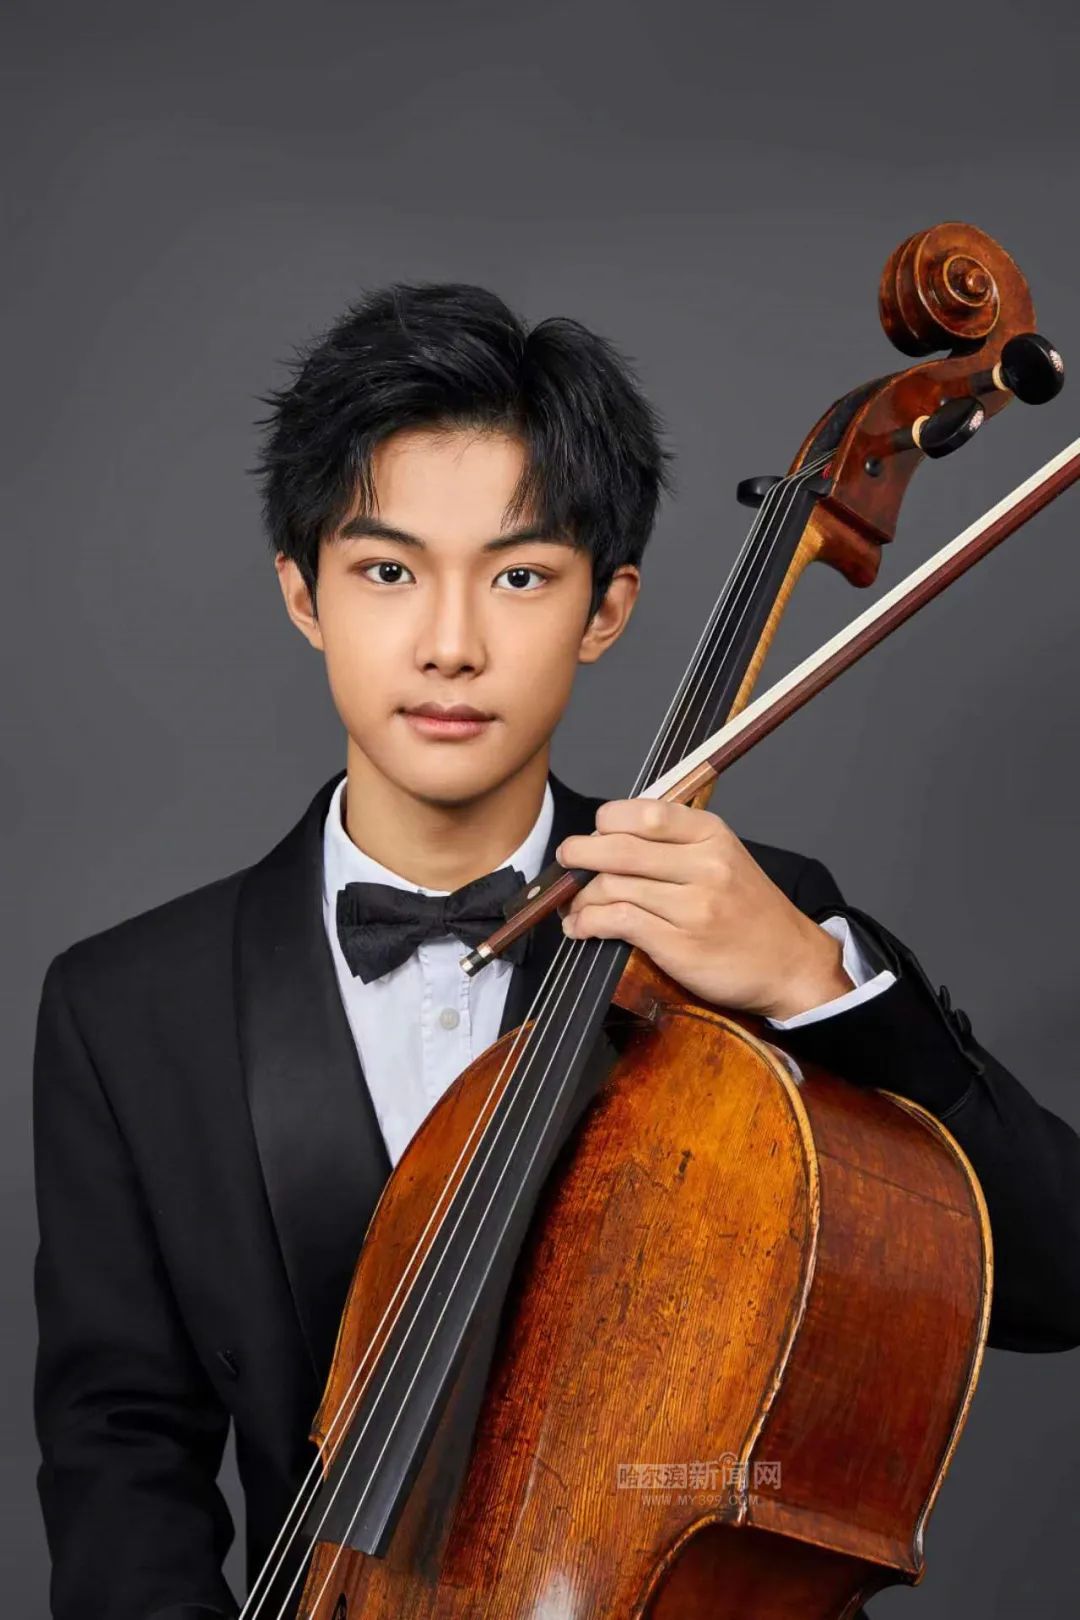 夏商周是本场演出的大提琴手,与他搭档的是哈尔滨交响乐团的小提琴